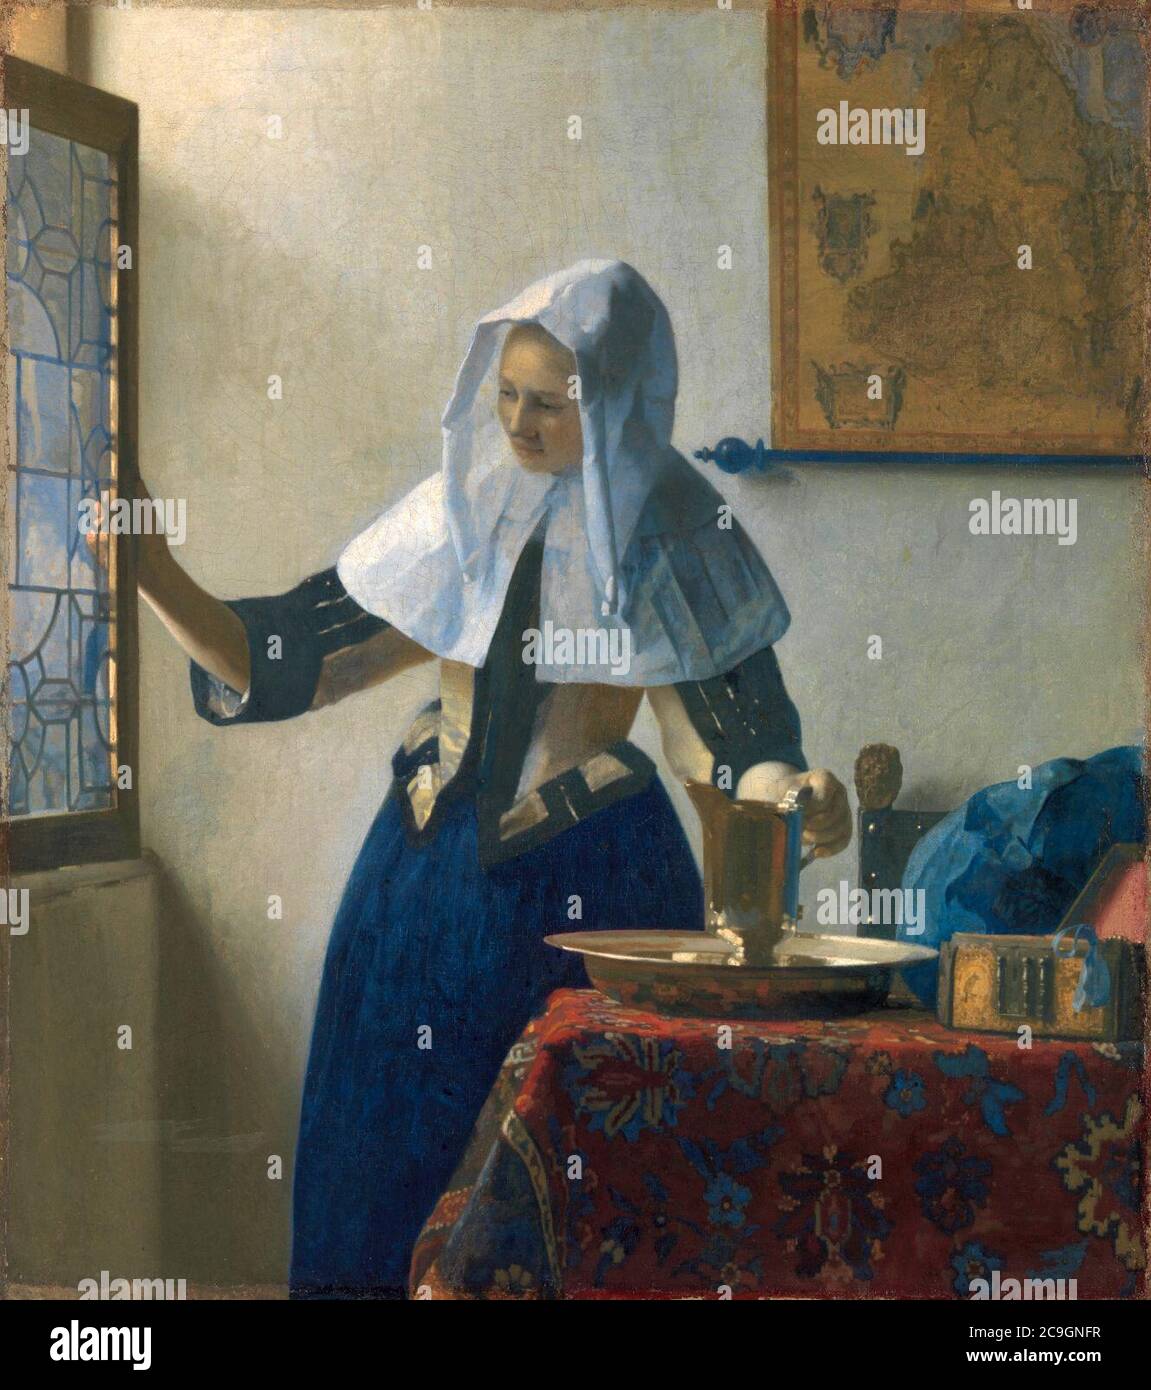 Jan Vermeer van Delft 019. Stock Photo